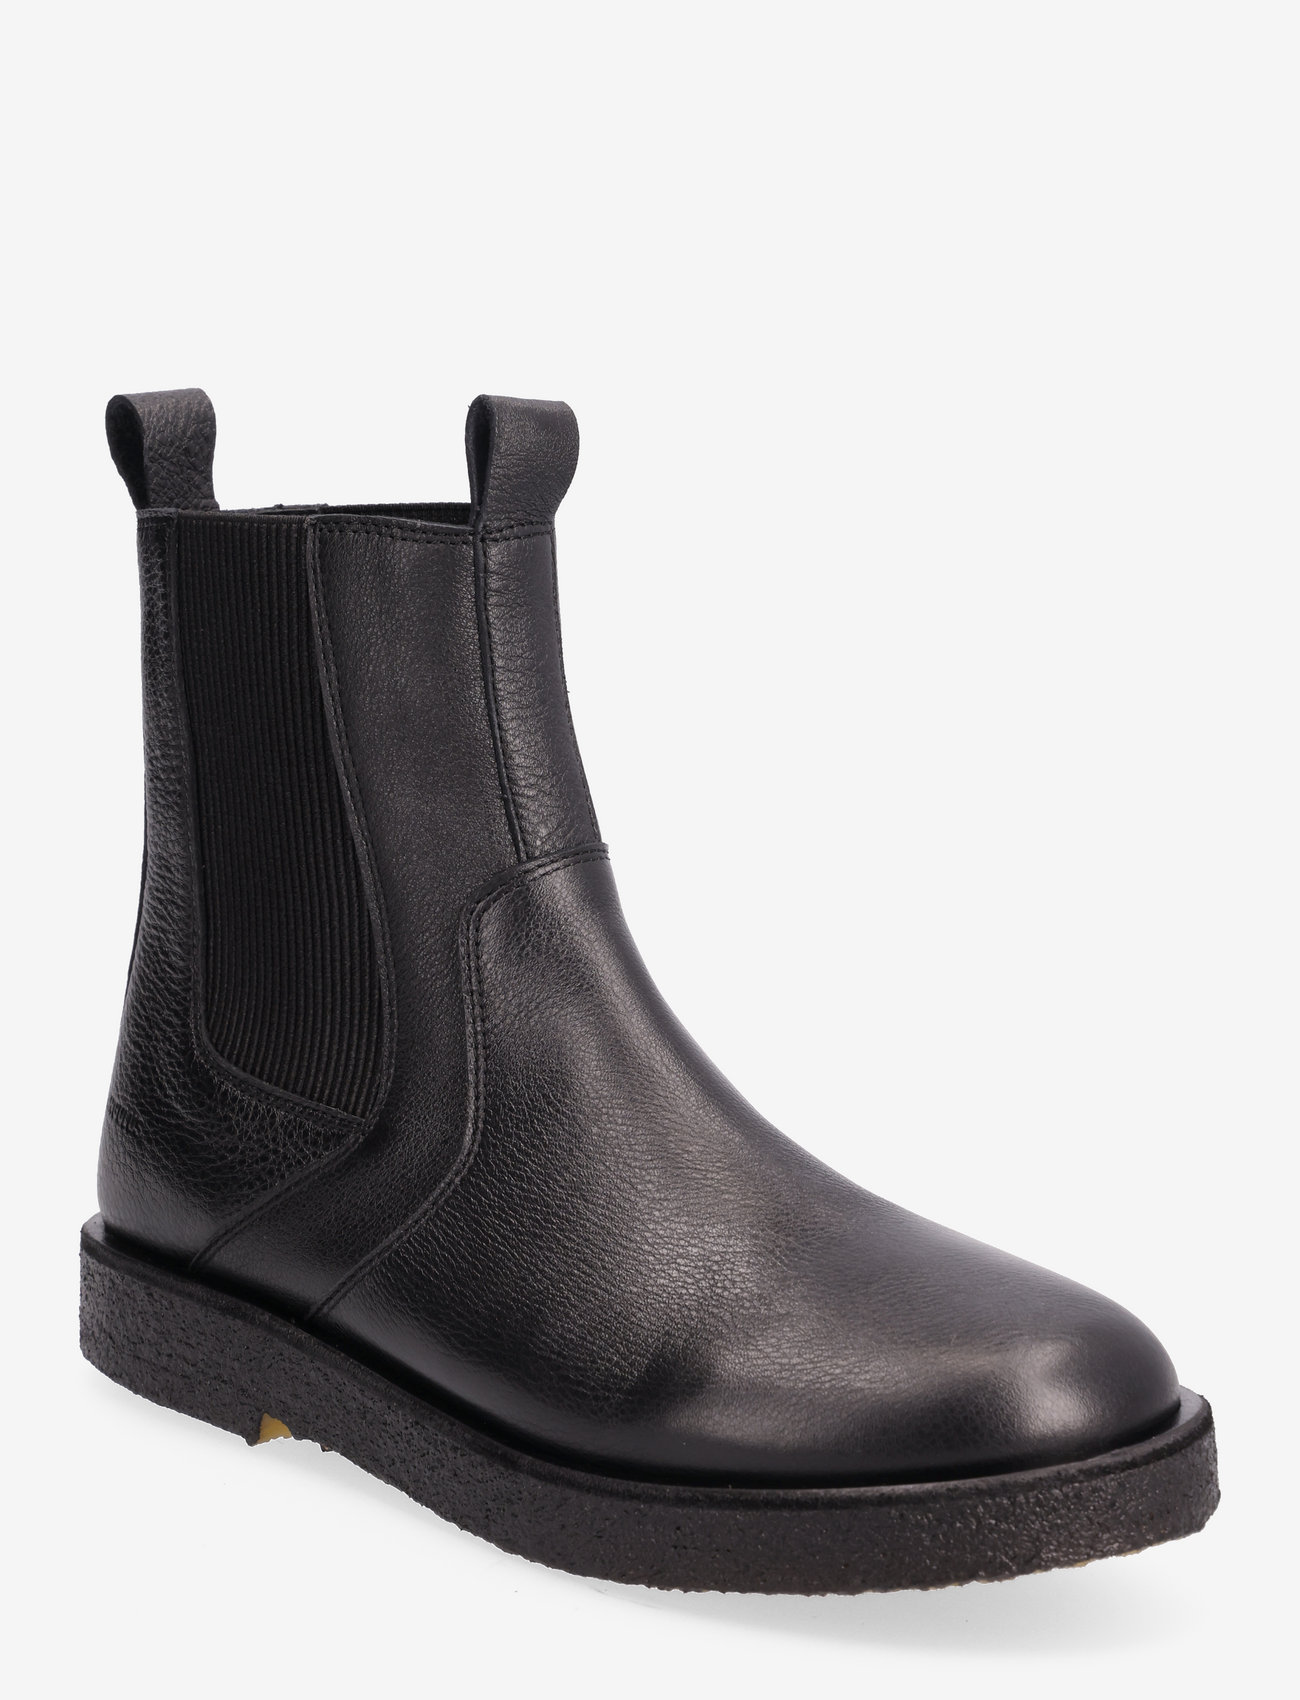 ANGULUS - Boots - flat - chelsea-saapad - 1933/019 black/black - 0